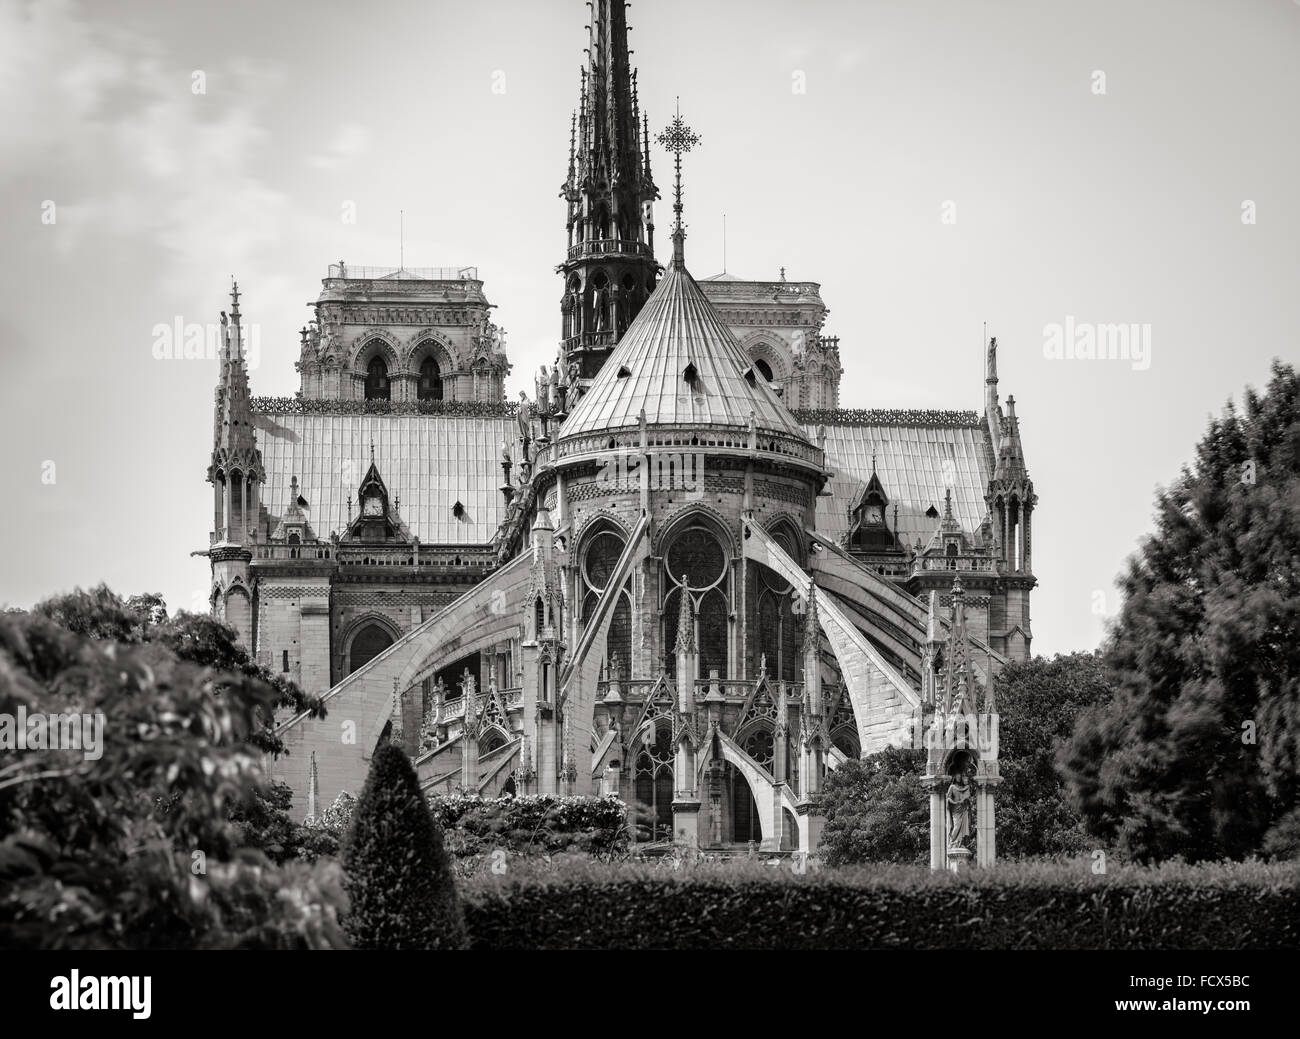 Notre Dame de Paris Cathedral dettagli architettonici in bianco e nero che mostra archi rampanti, le due torri e la guglia. Francia Foto Stock